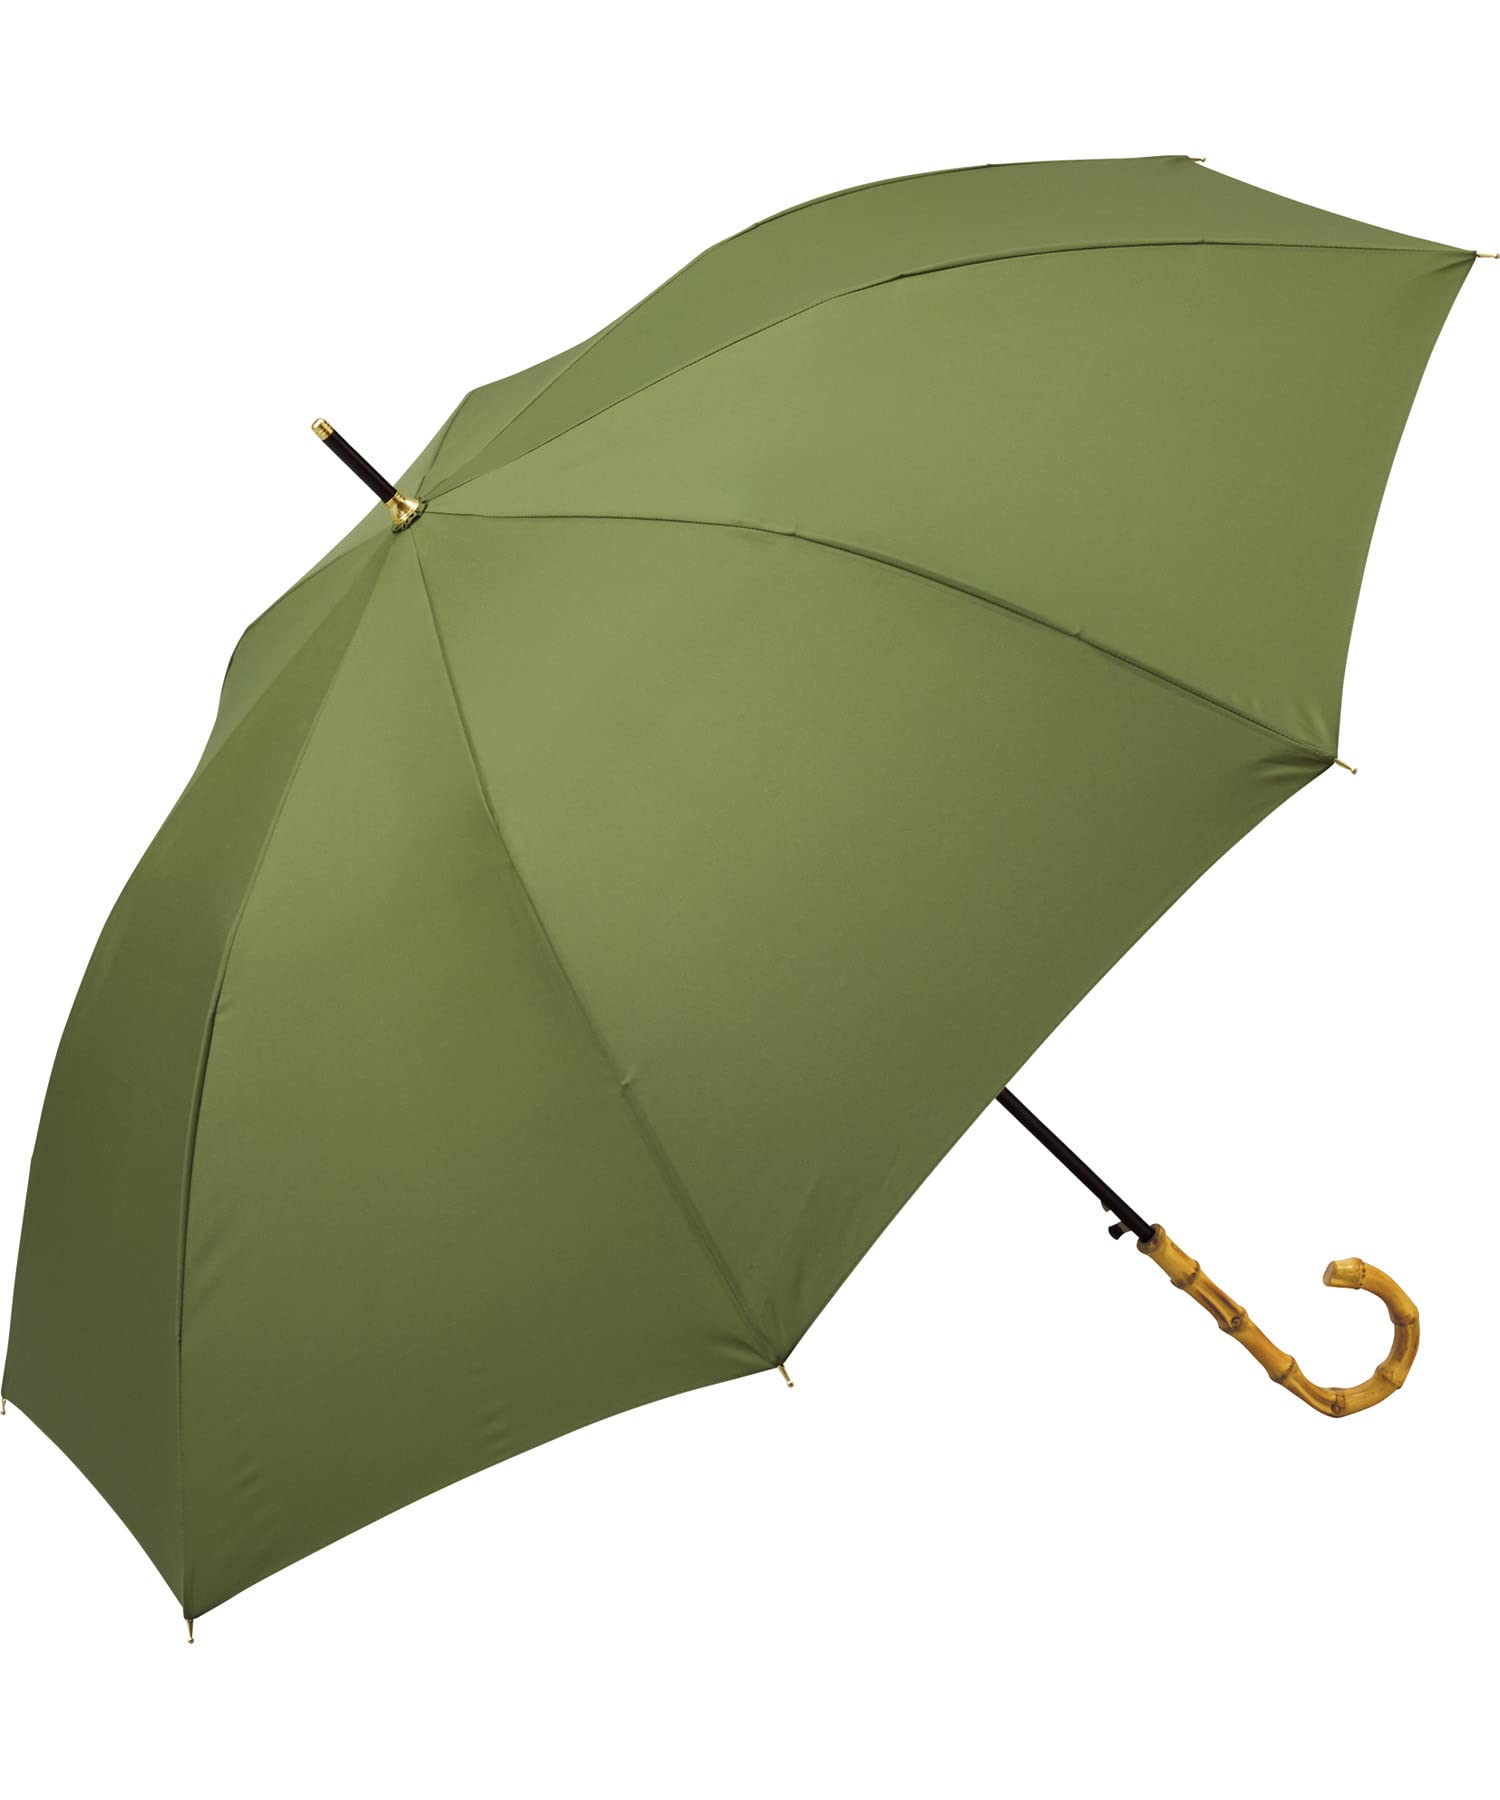 Wpc. 雨傘 ベーシックバンブージャンプアンブレラ カーキ 長傘 63cm レディース 晴雨兼用 ジャンプ傘 大きい バンブーハンドル シンプル